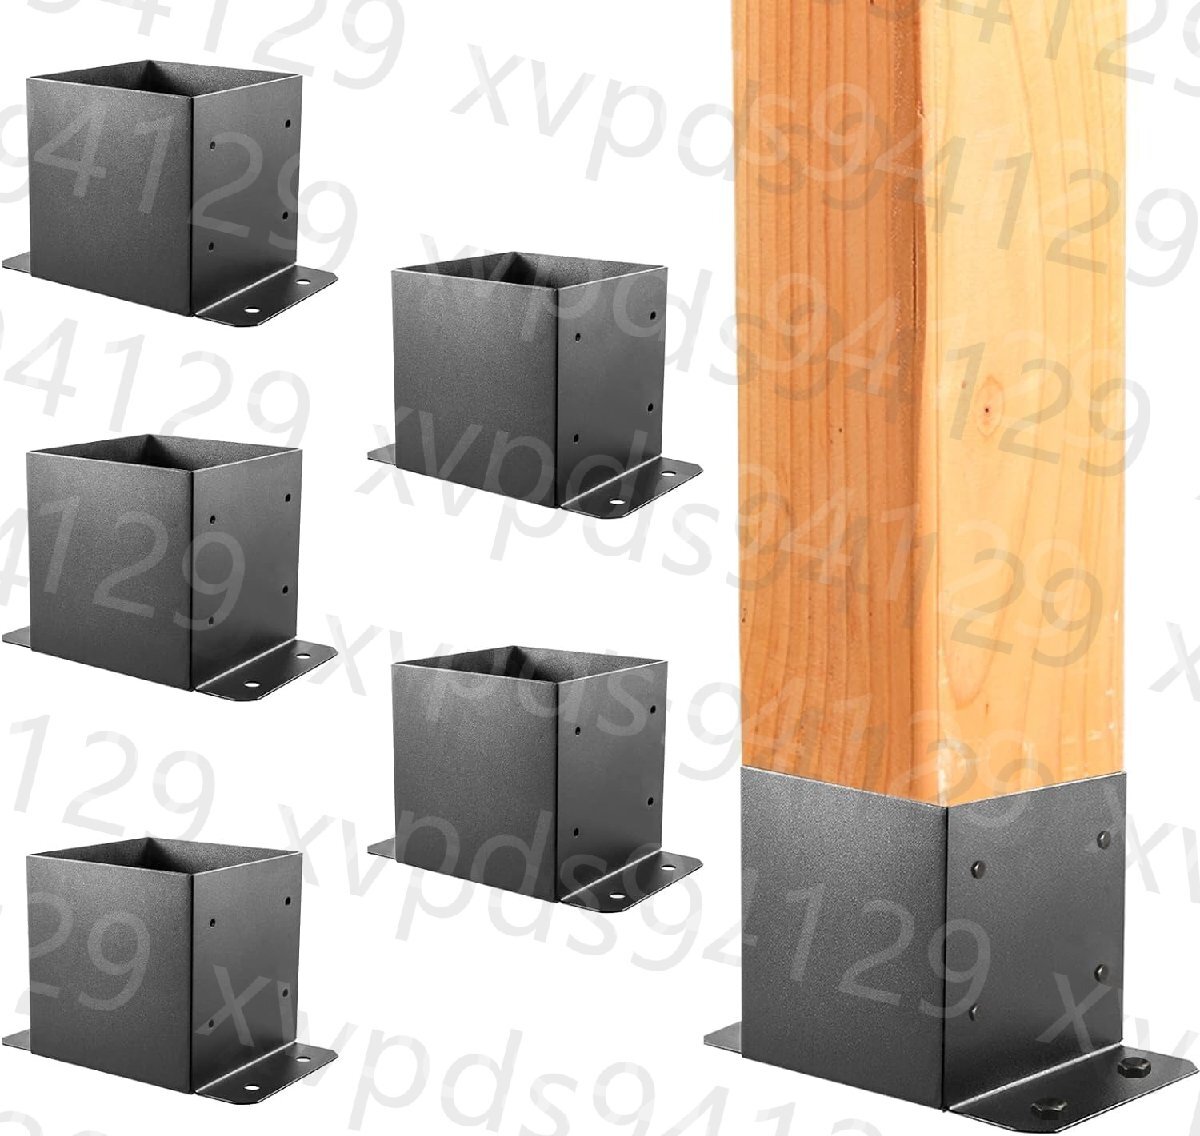 6x6 post основа 5 шт панель post основа внутри сторона размер 5.6 дюймовый высокая прочность solid steel черный пудра покрытие post держатель 